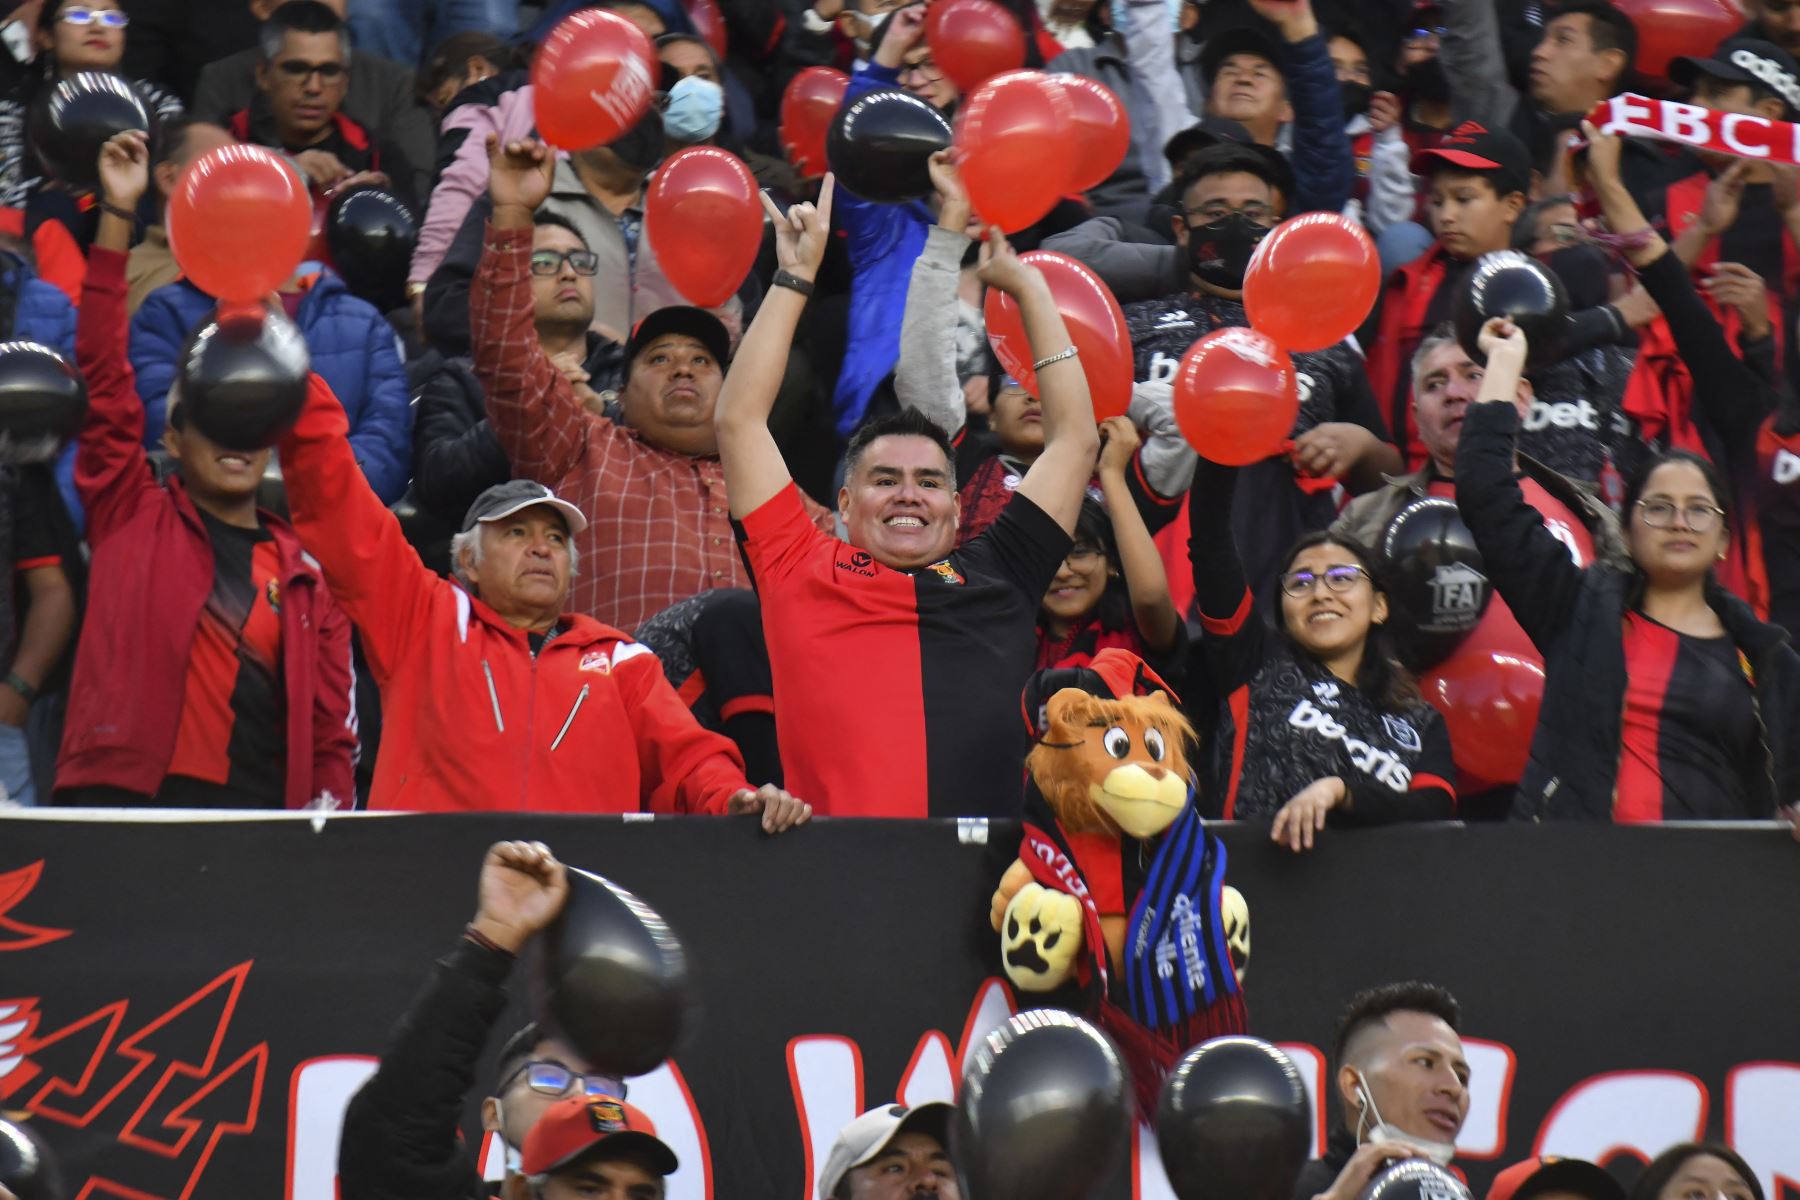 Los hinchas de Melgar animan a su equipo antes del partido de vuelta de la semifinal del torneo de fútbol de la Copa Sudamericana entre Melgar e Independiente del Valle, en el estadio Monumental de la UNSA en Arequipa.
Foto: AFP